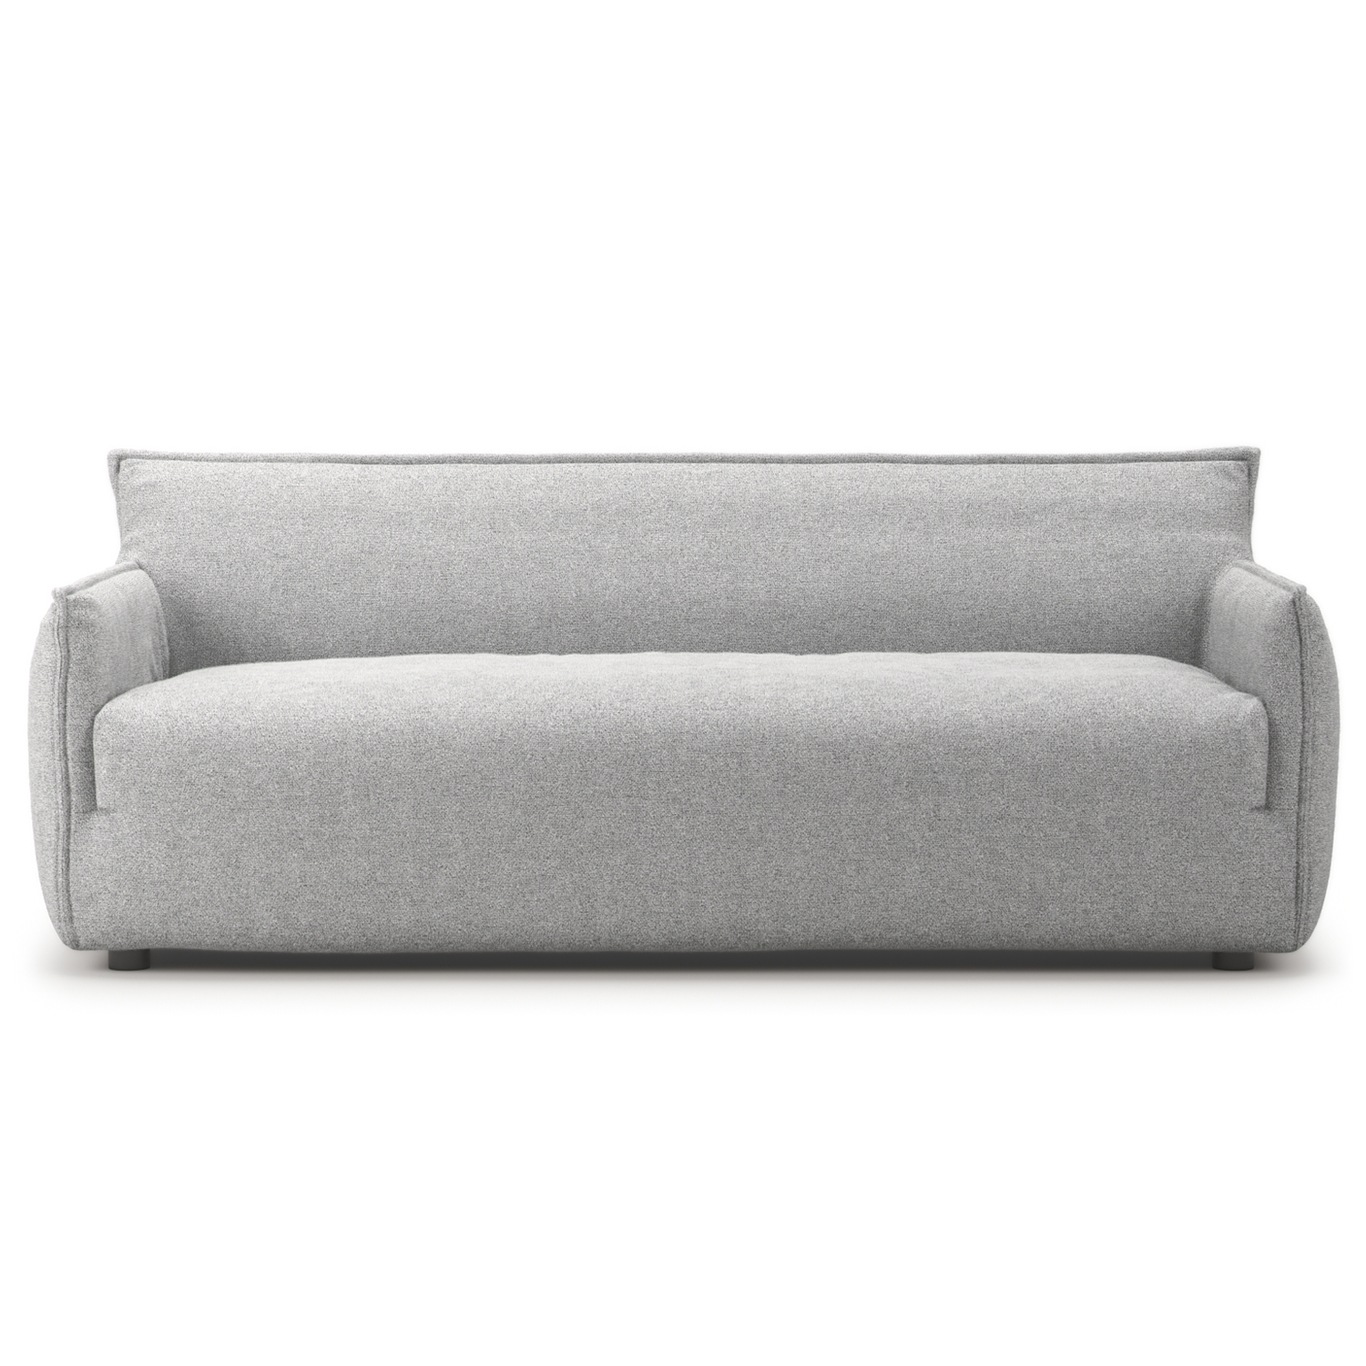 Le Petite 3-Seater Sofa, Pacific white